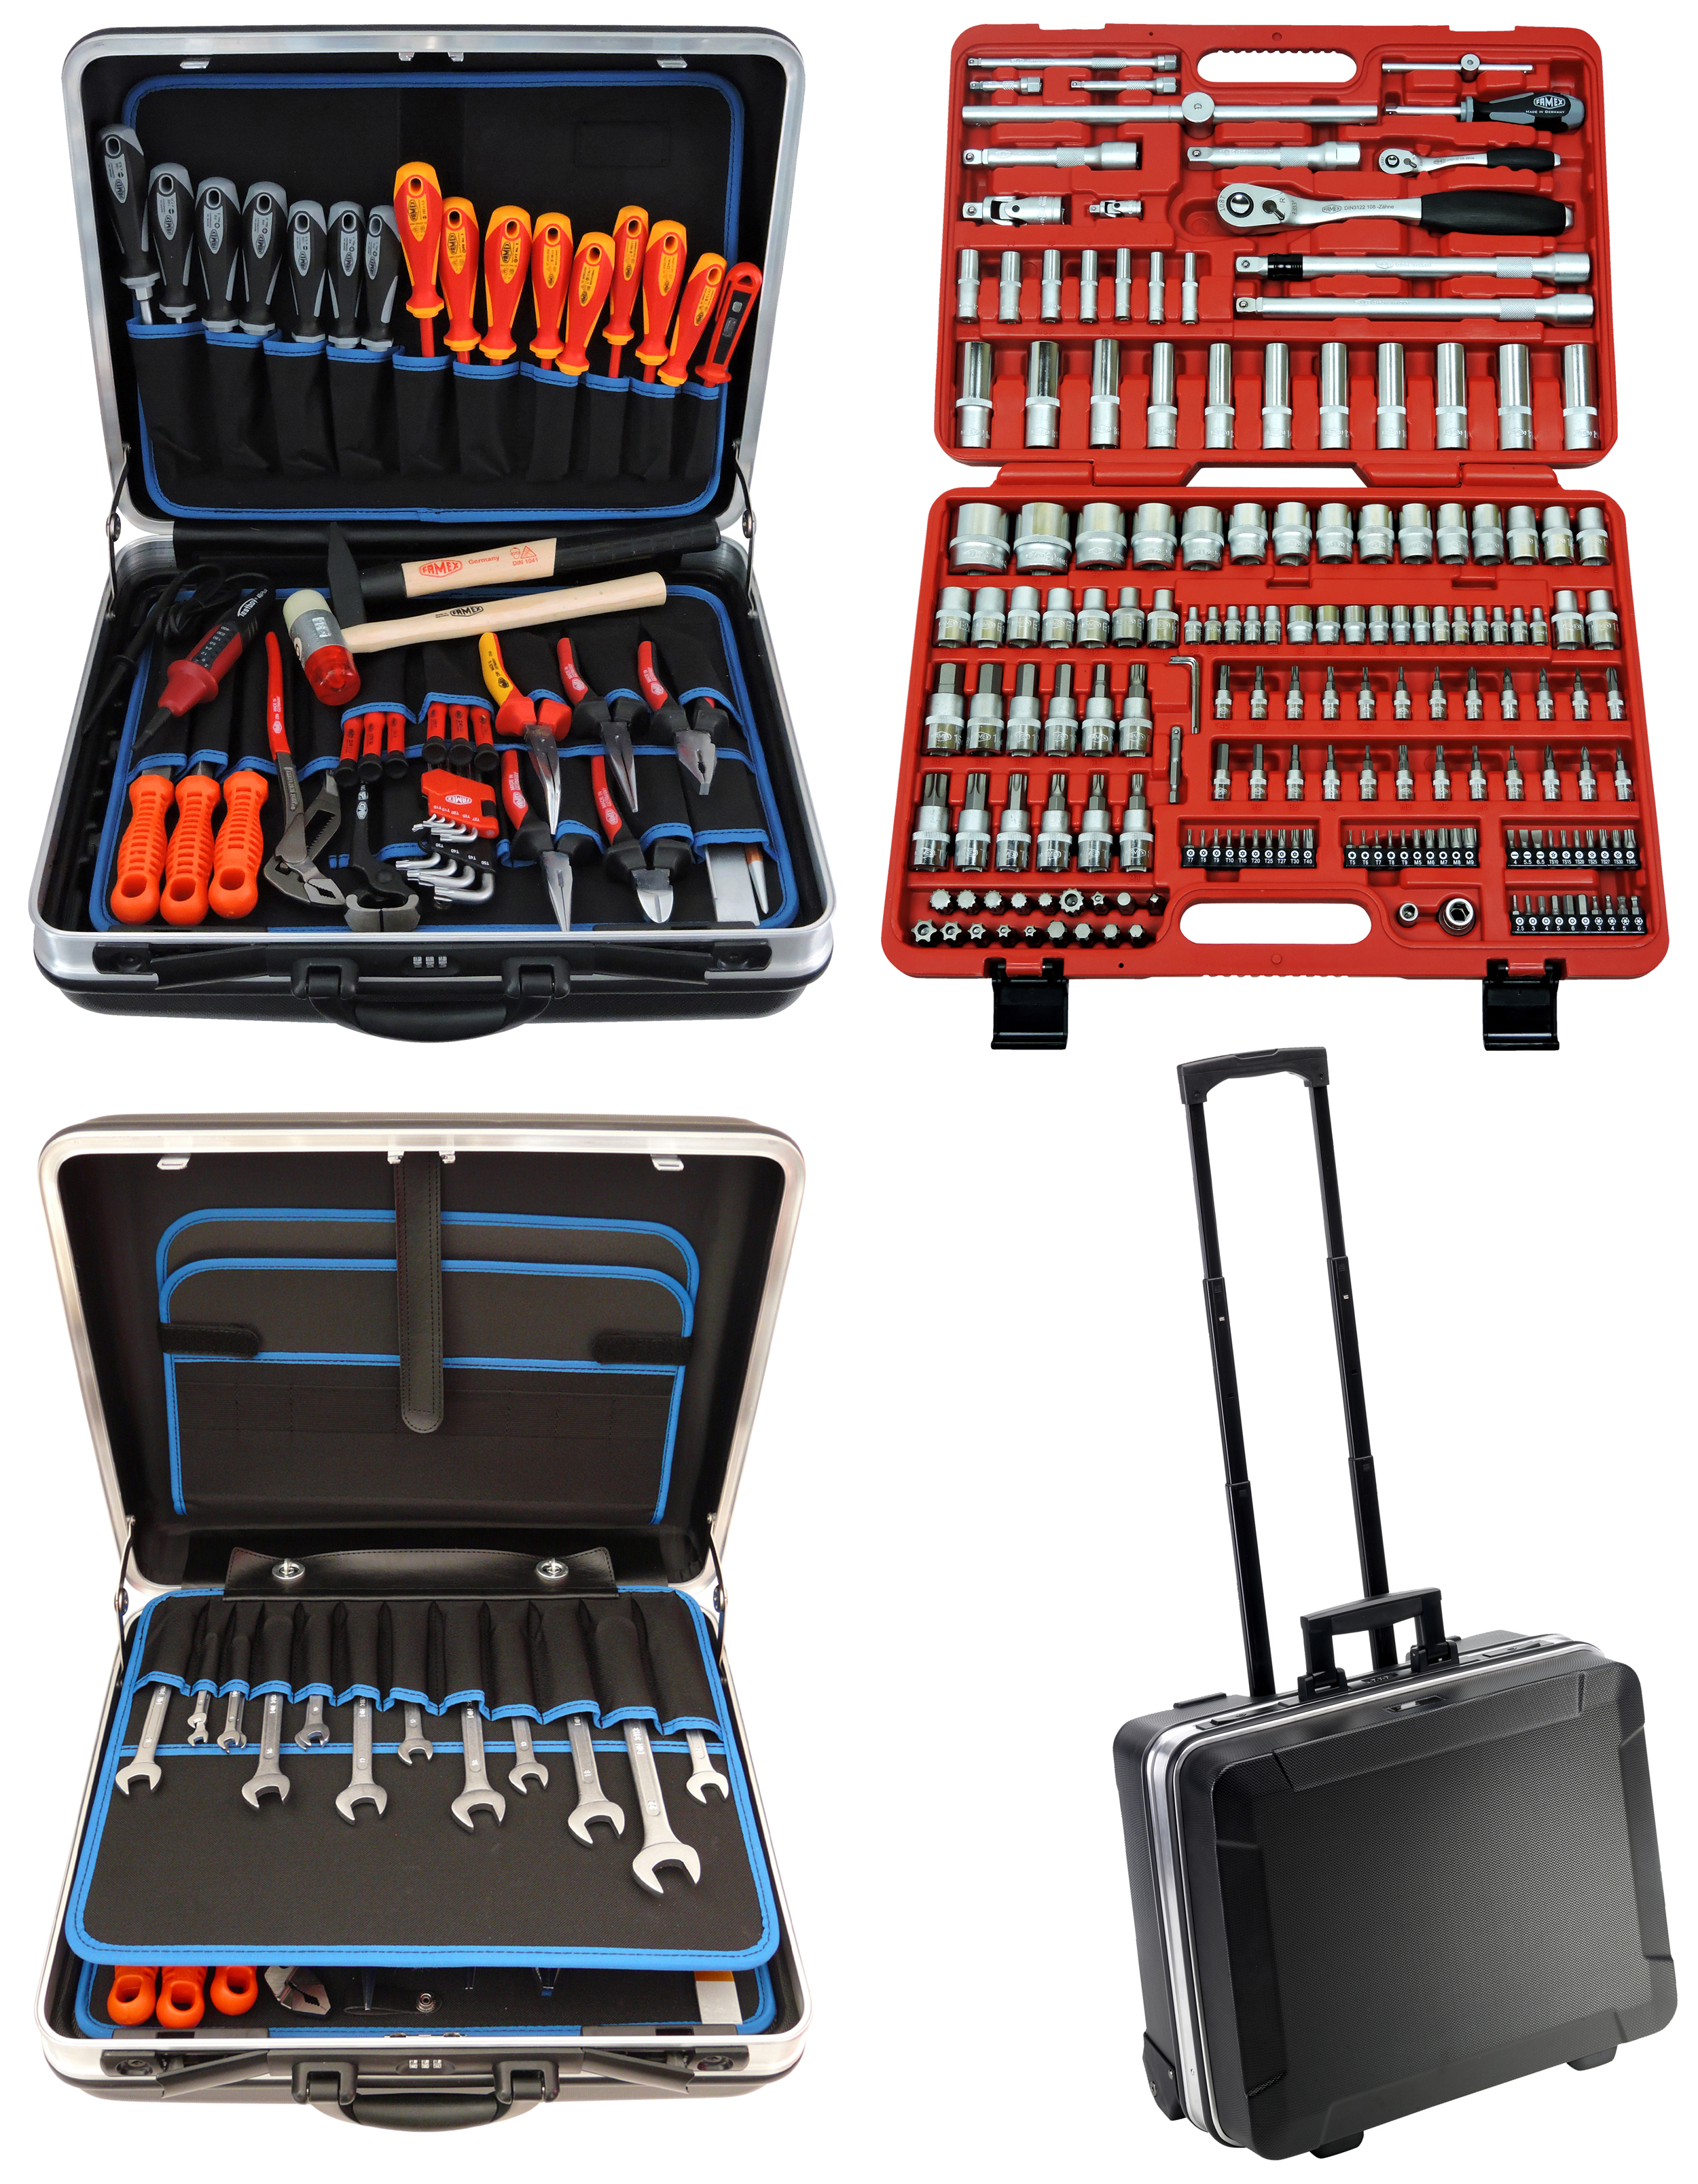 Werkzeuge günstig online kaufen - FAMEX 604-09 Trolley ABS Werkzeugkoffer  Komplettset High-End Qualität mit 174-teiligem Steckschlüsselsatz